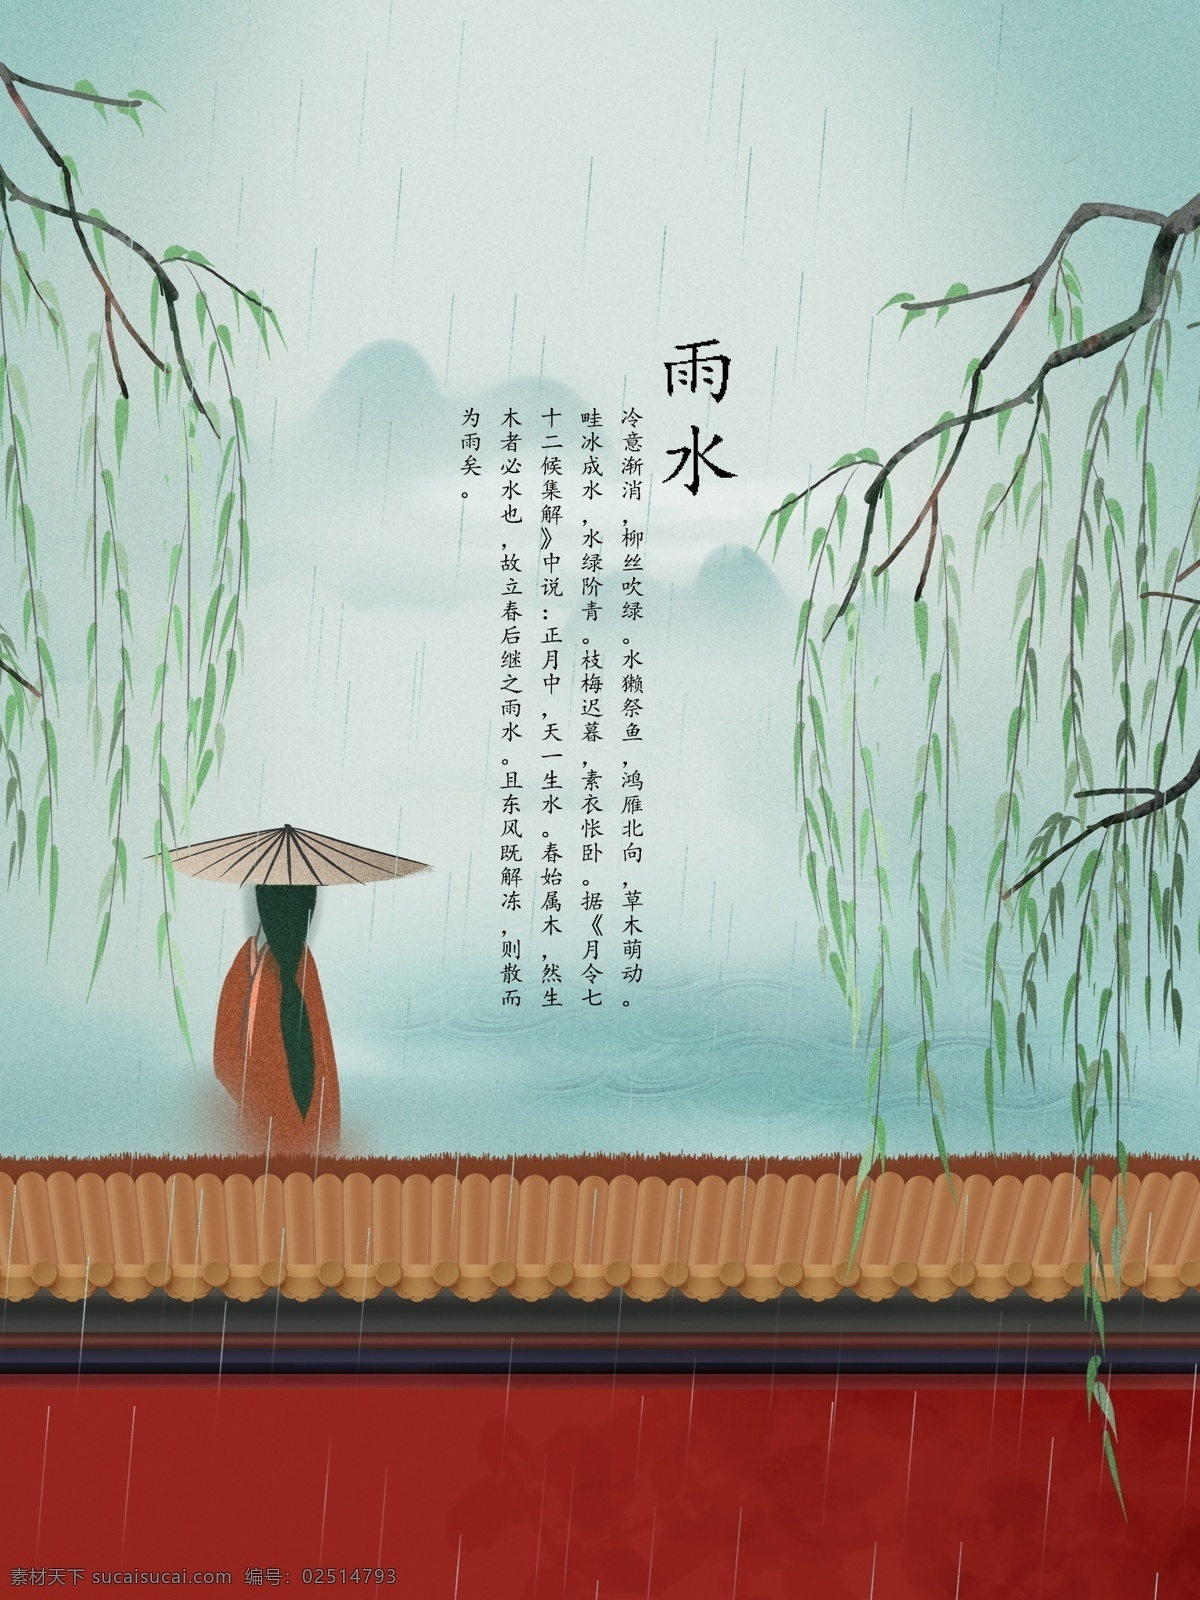 二十四节气 雨水 绿色 水墨 红墙 彩绘 古典 中国风 节气雨水 背影 宫墙 柳树